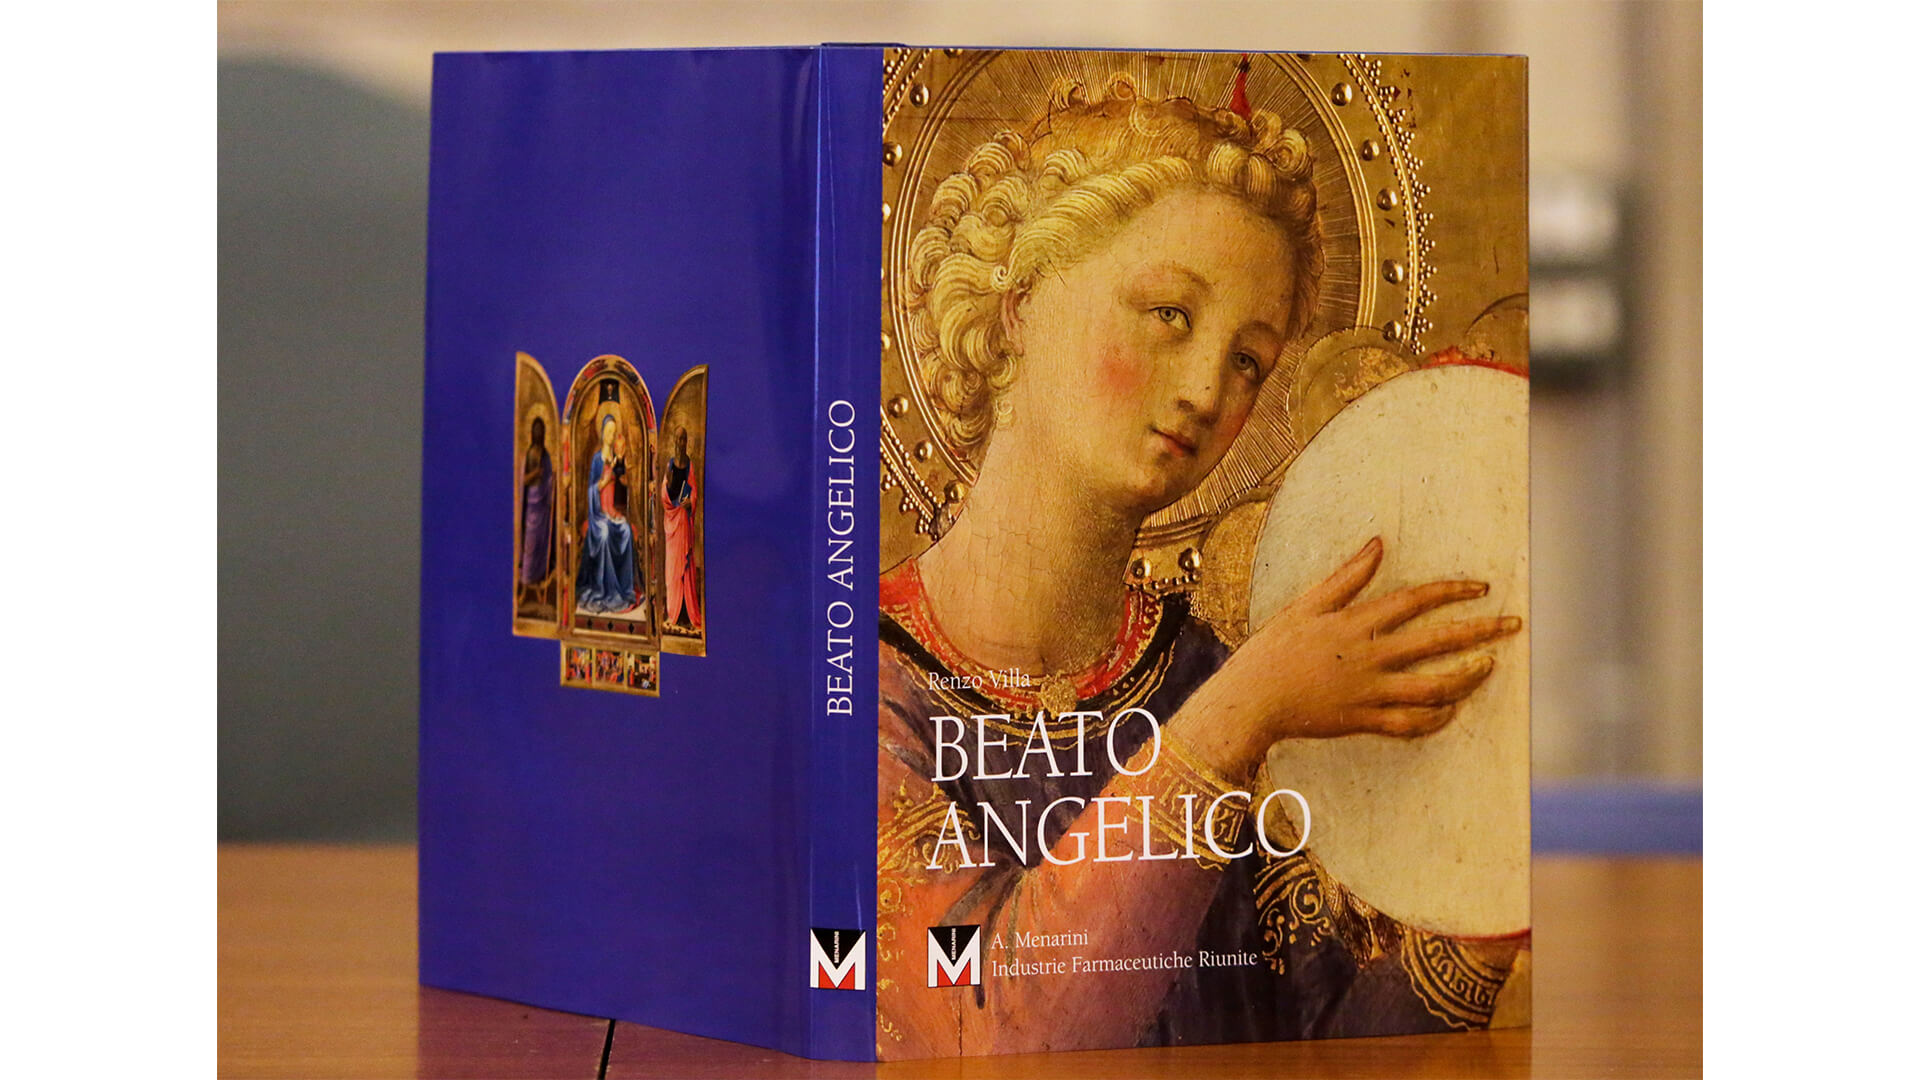 Menarini monograph Beato Angelico